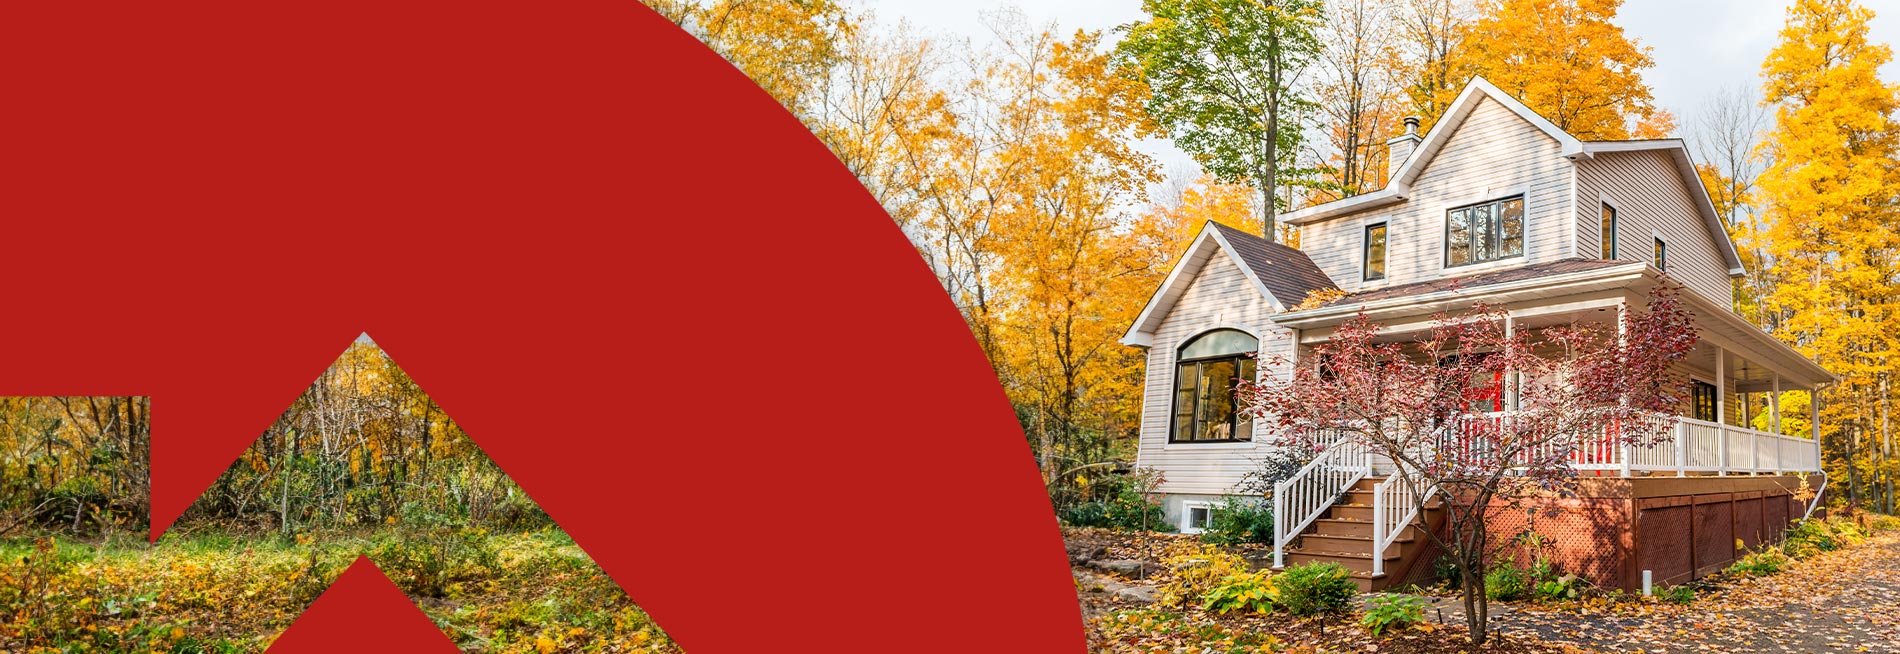 Prêt canadien pour des maisons plus vertes